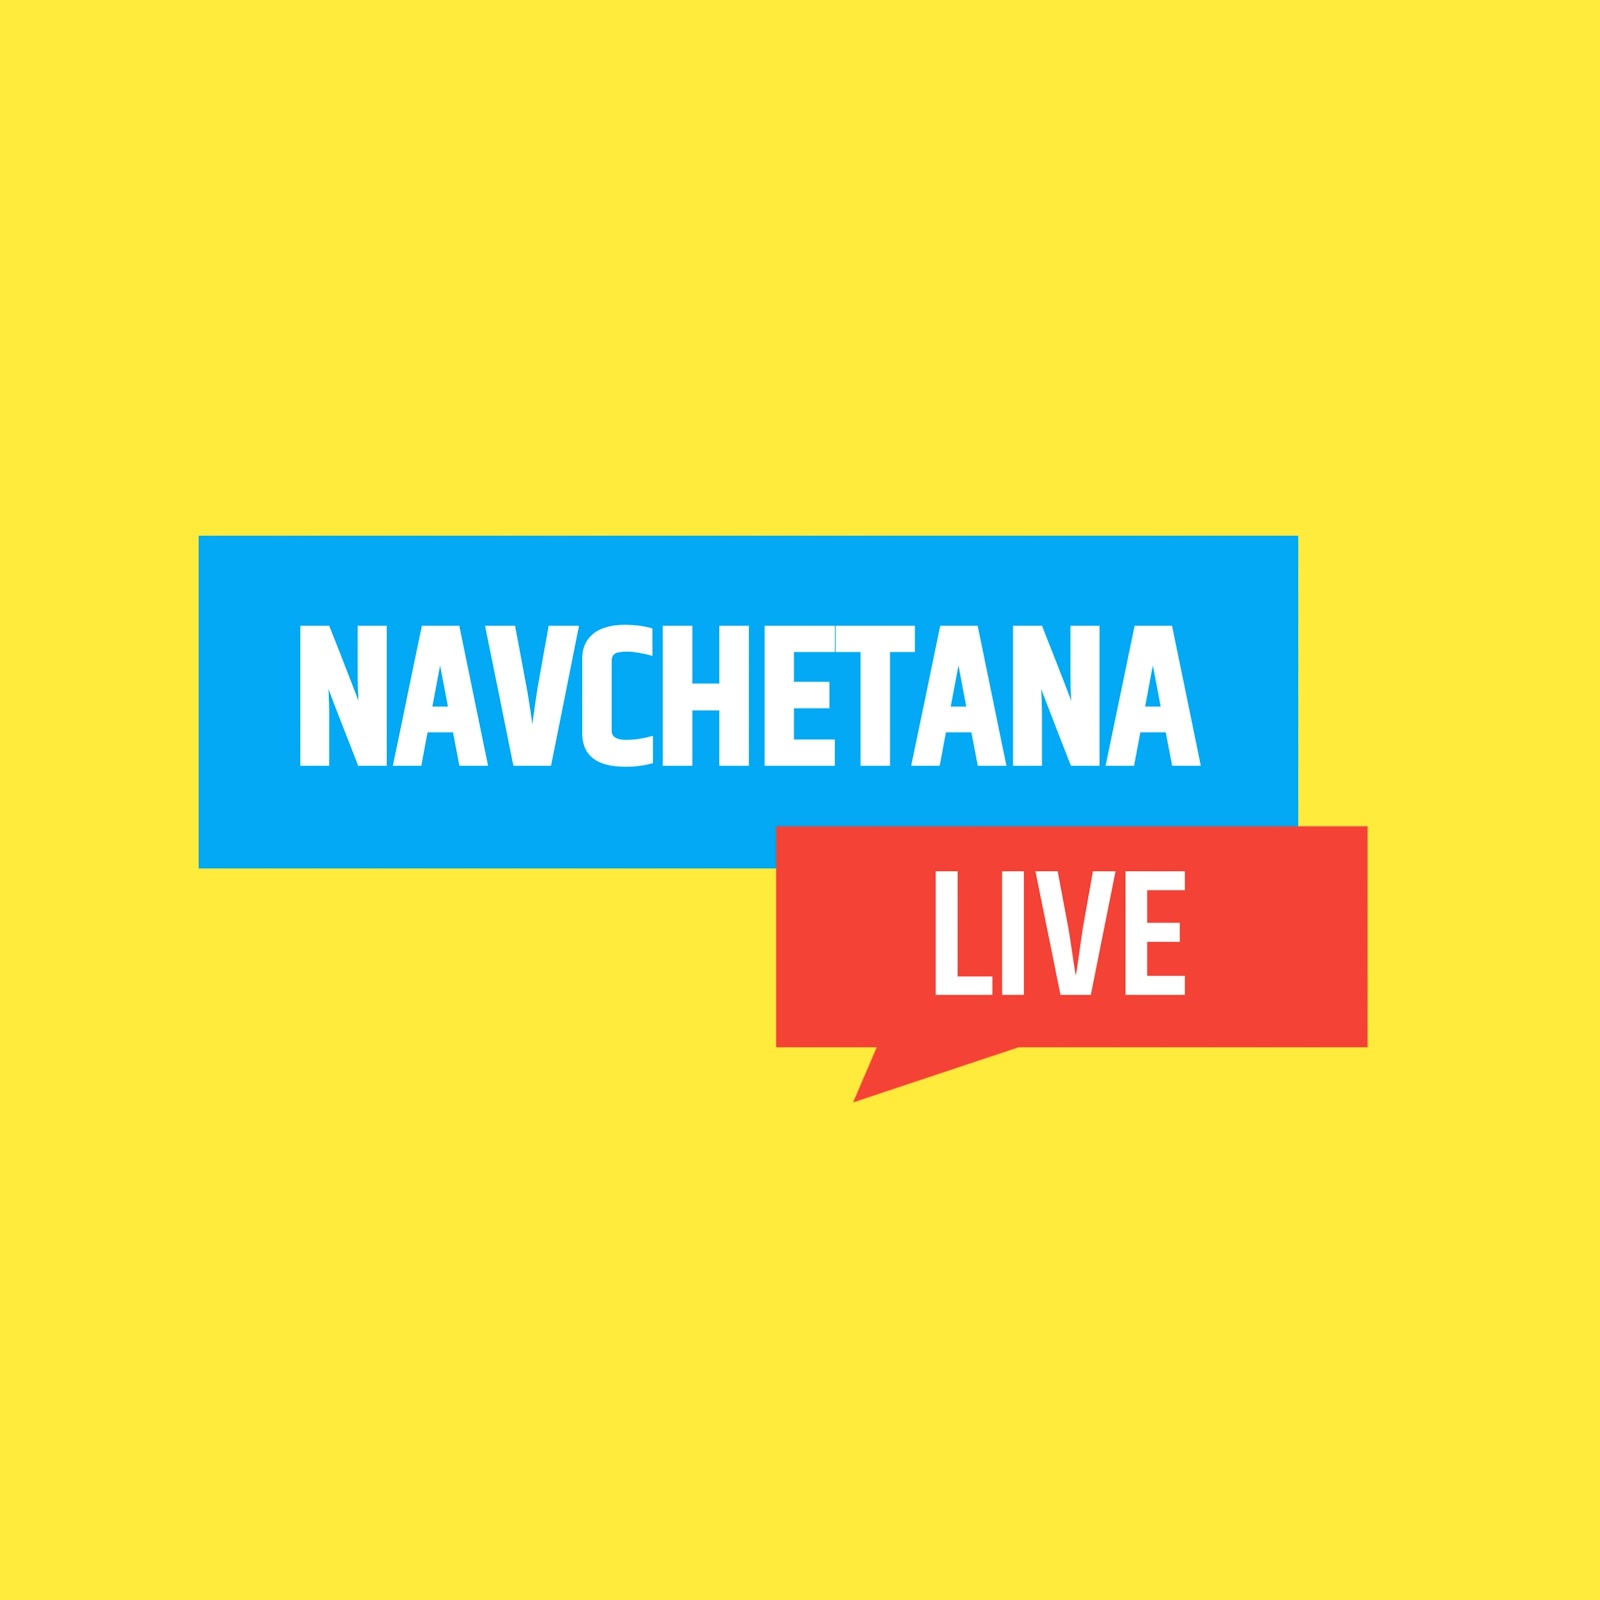 Navchetana Live